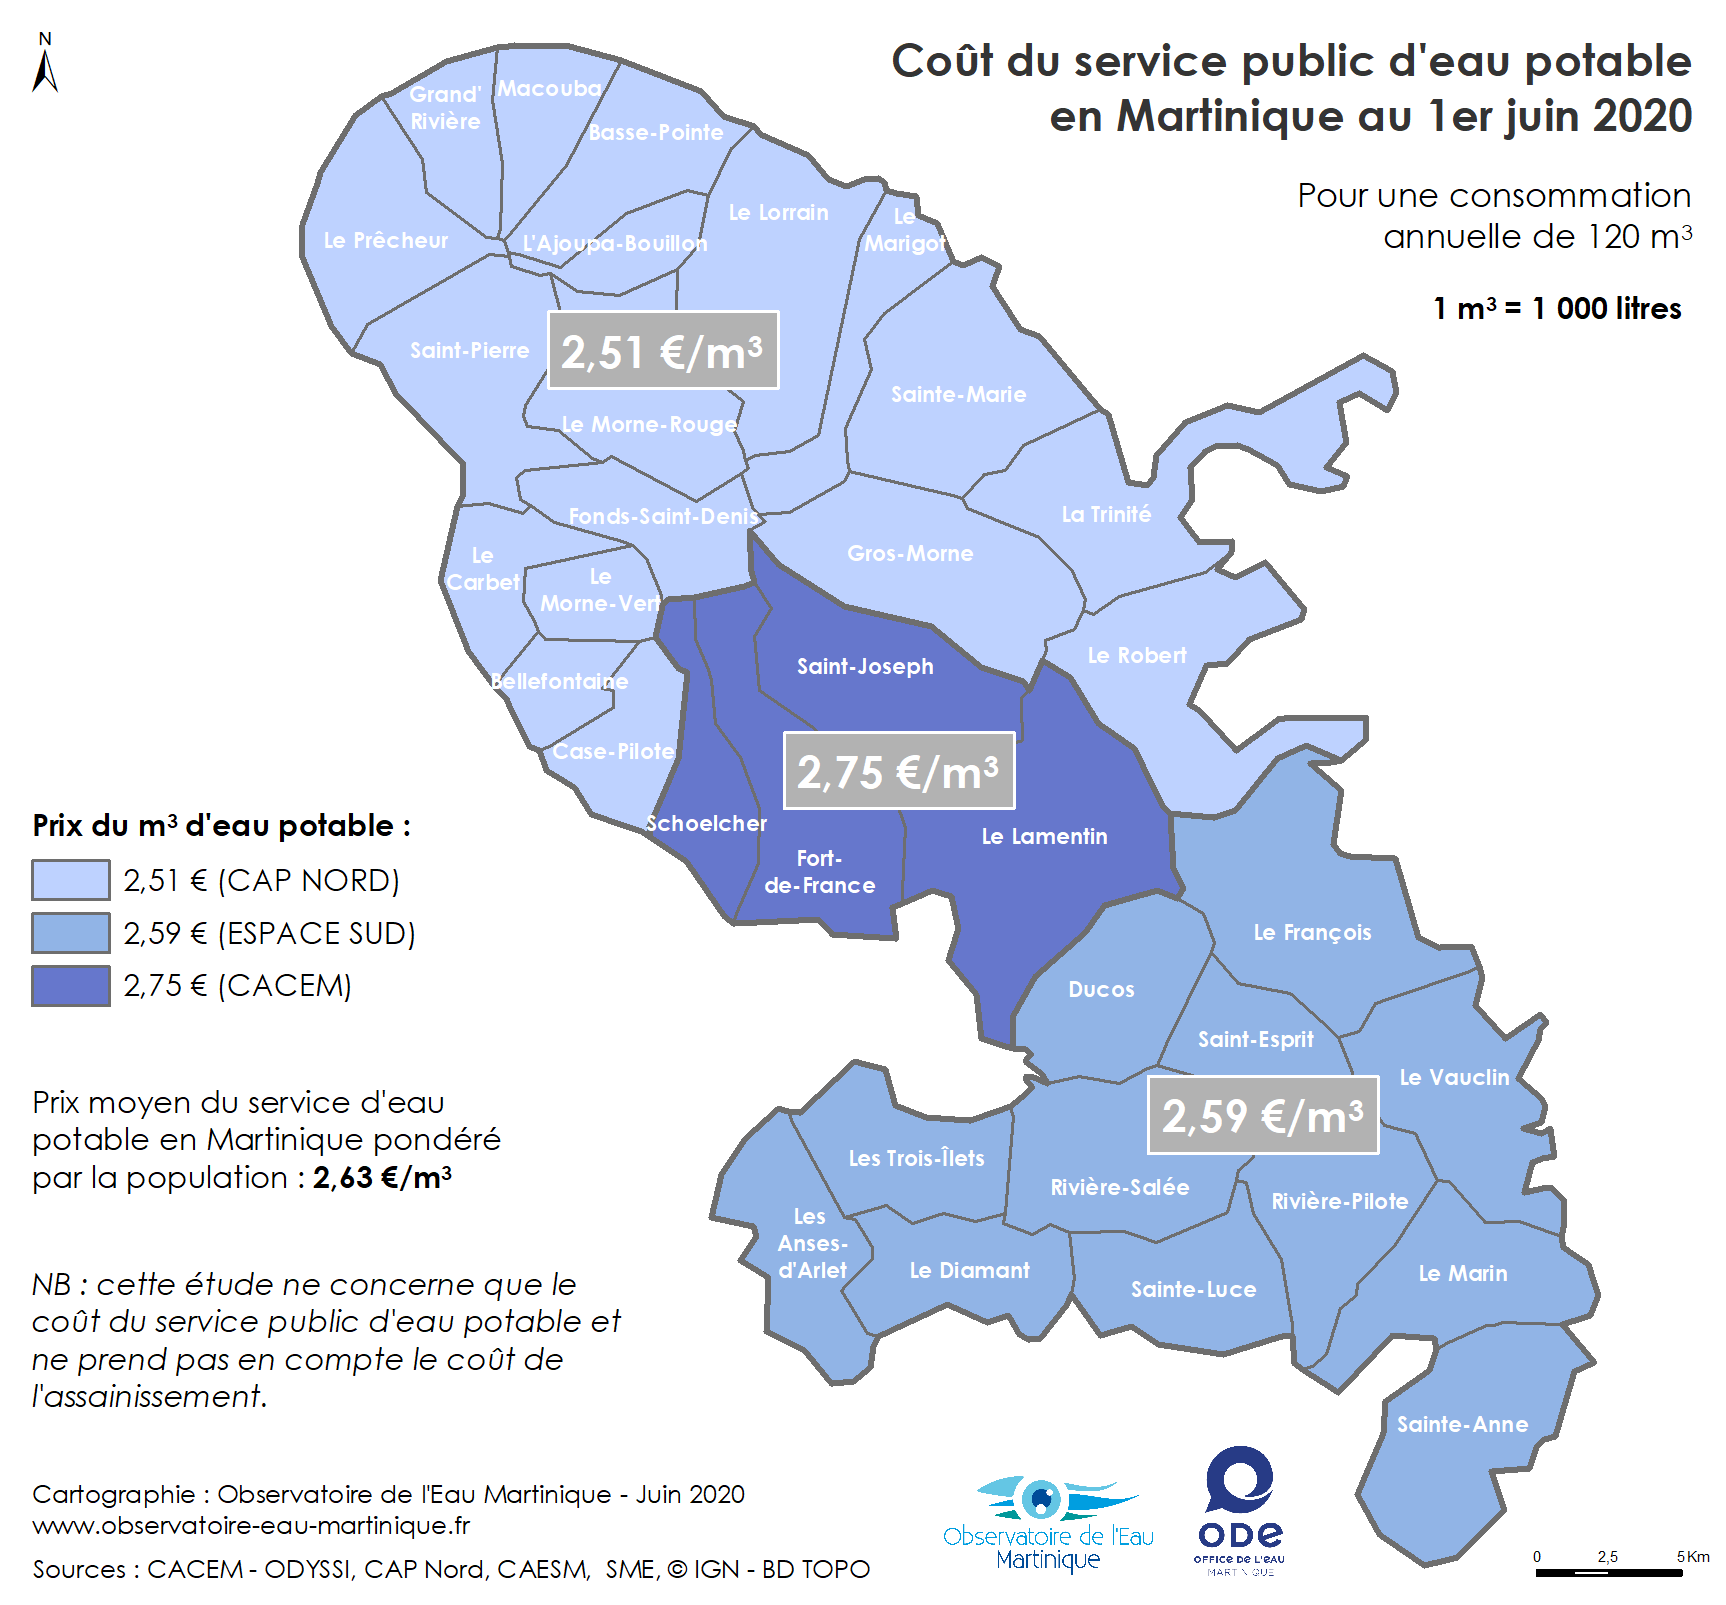 Coût du service public d'eau potable en Martinique au 1er juin 2020 